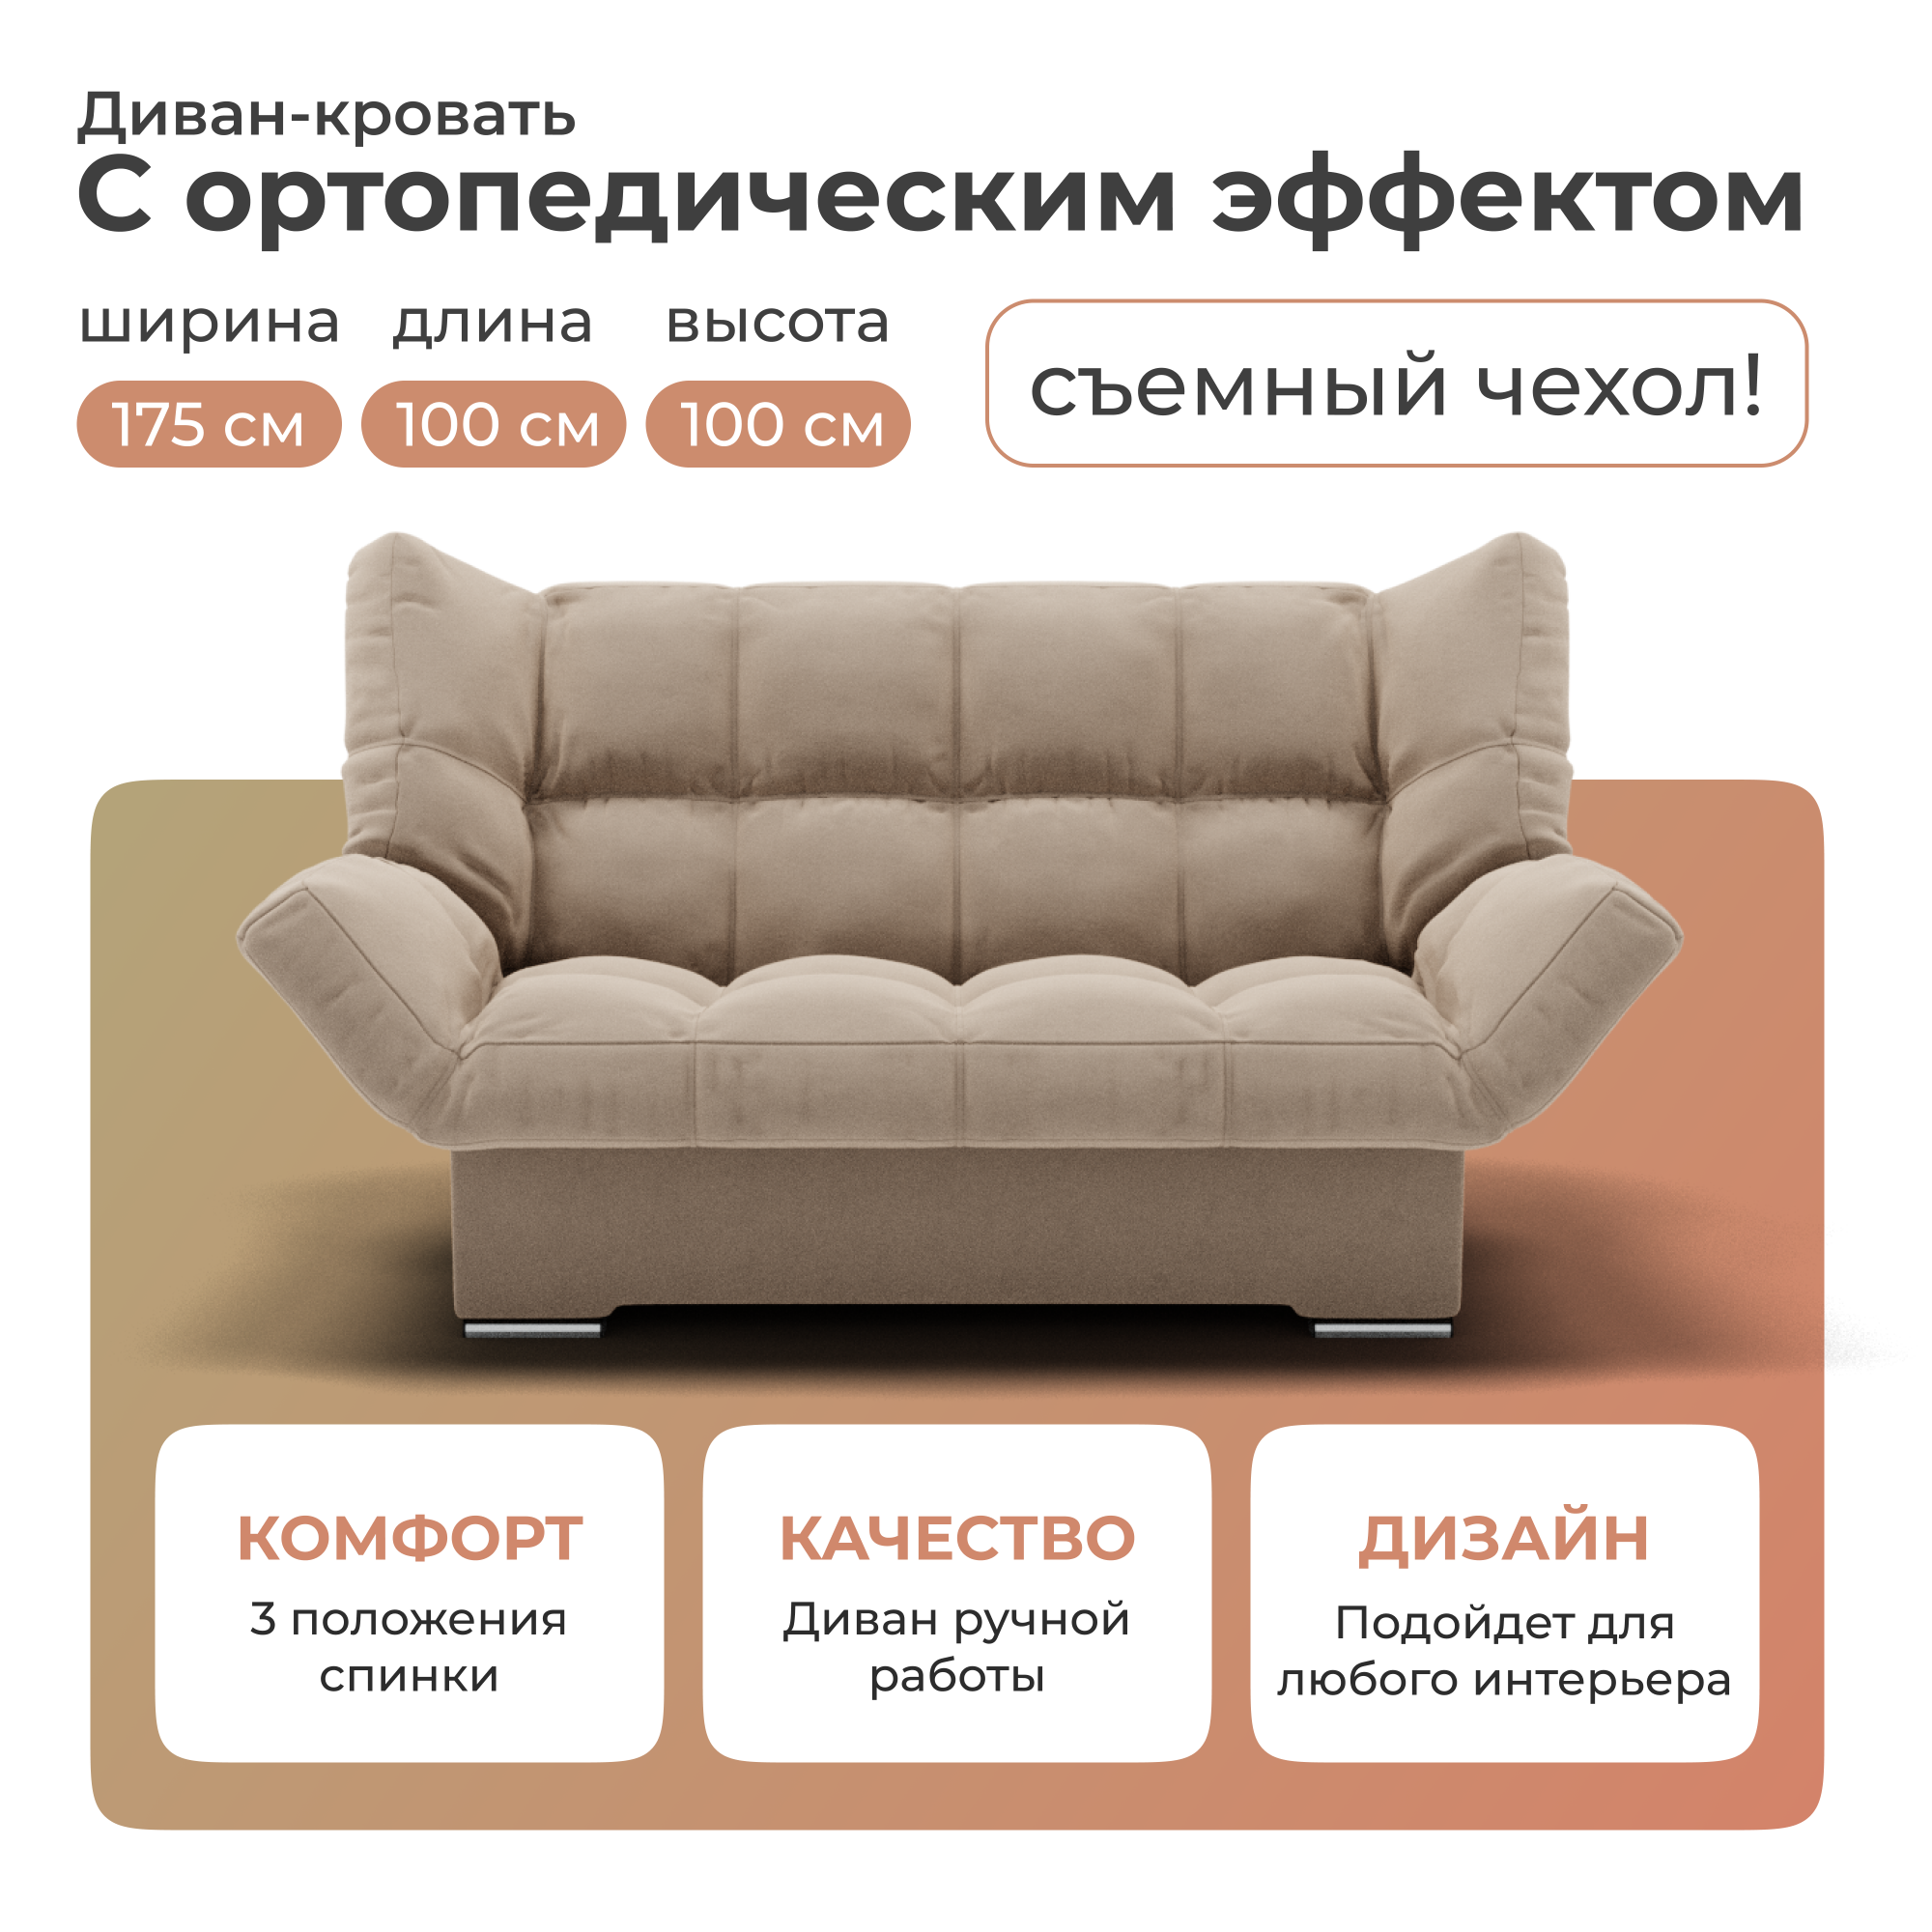 Диван-кровать Yorcom Клик-кляк велюта 07, 205х100х100 см - купить в Москве, цены на Мегамаркет | 600017004510